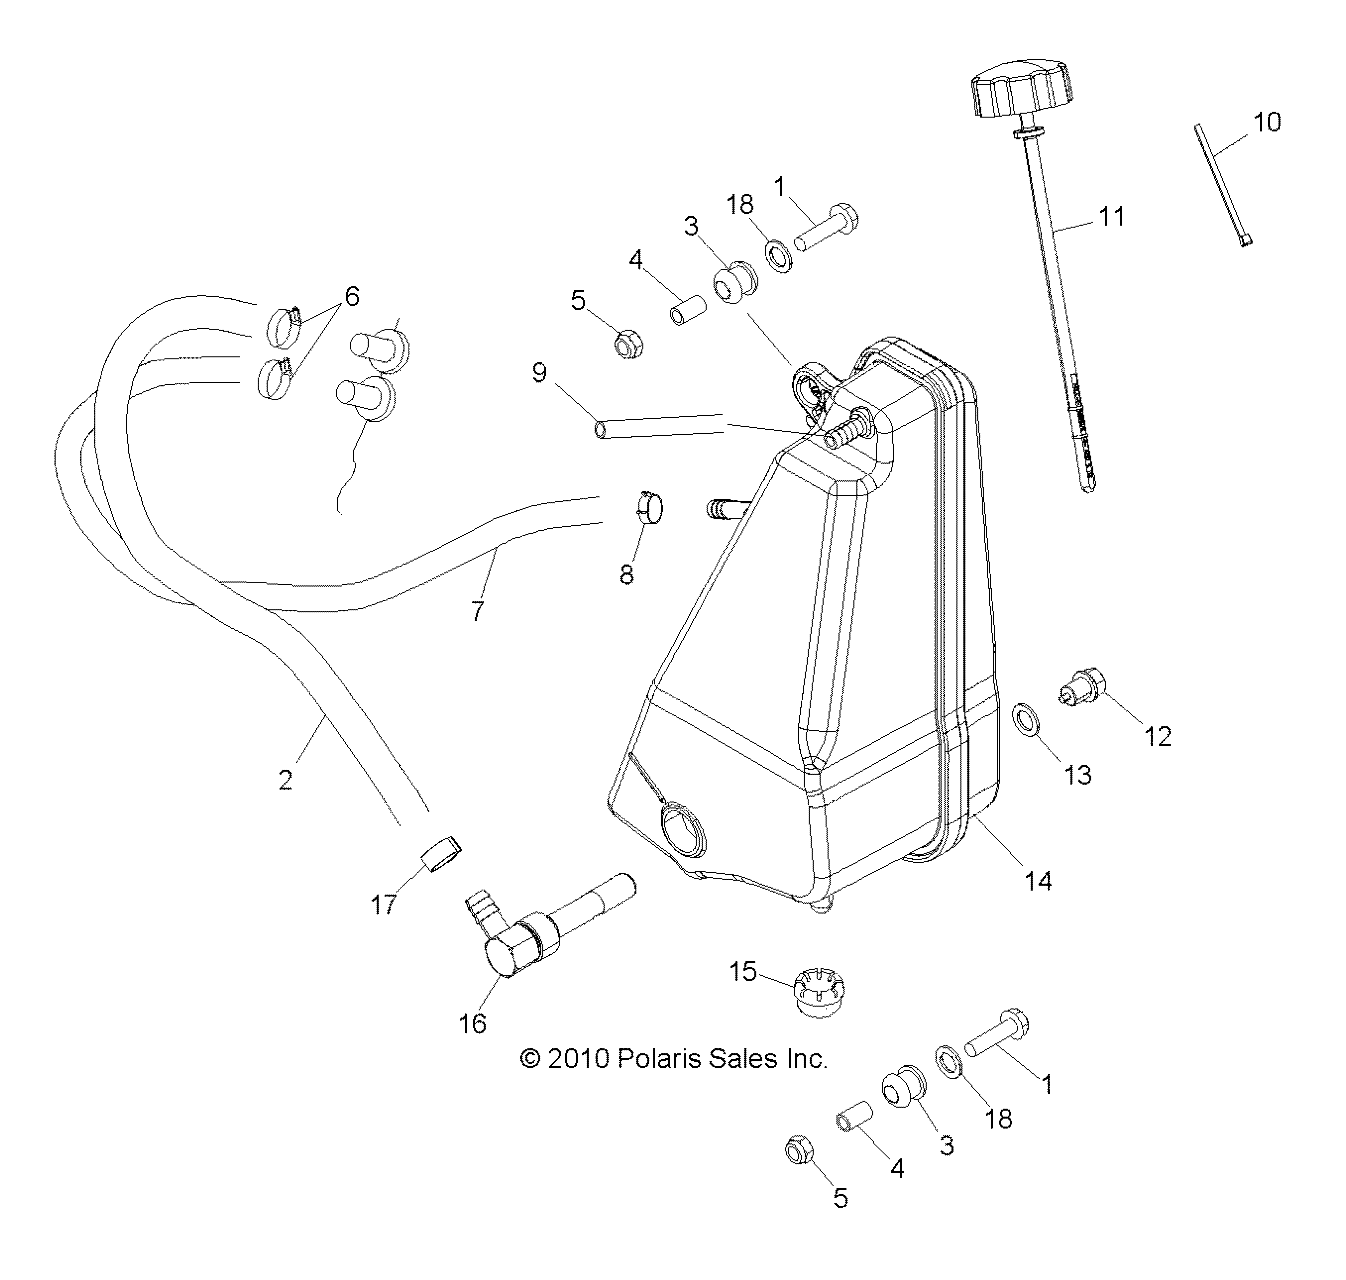 Foto diagrama Polaris que contem a peça 5412366